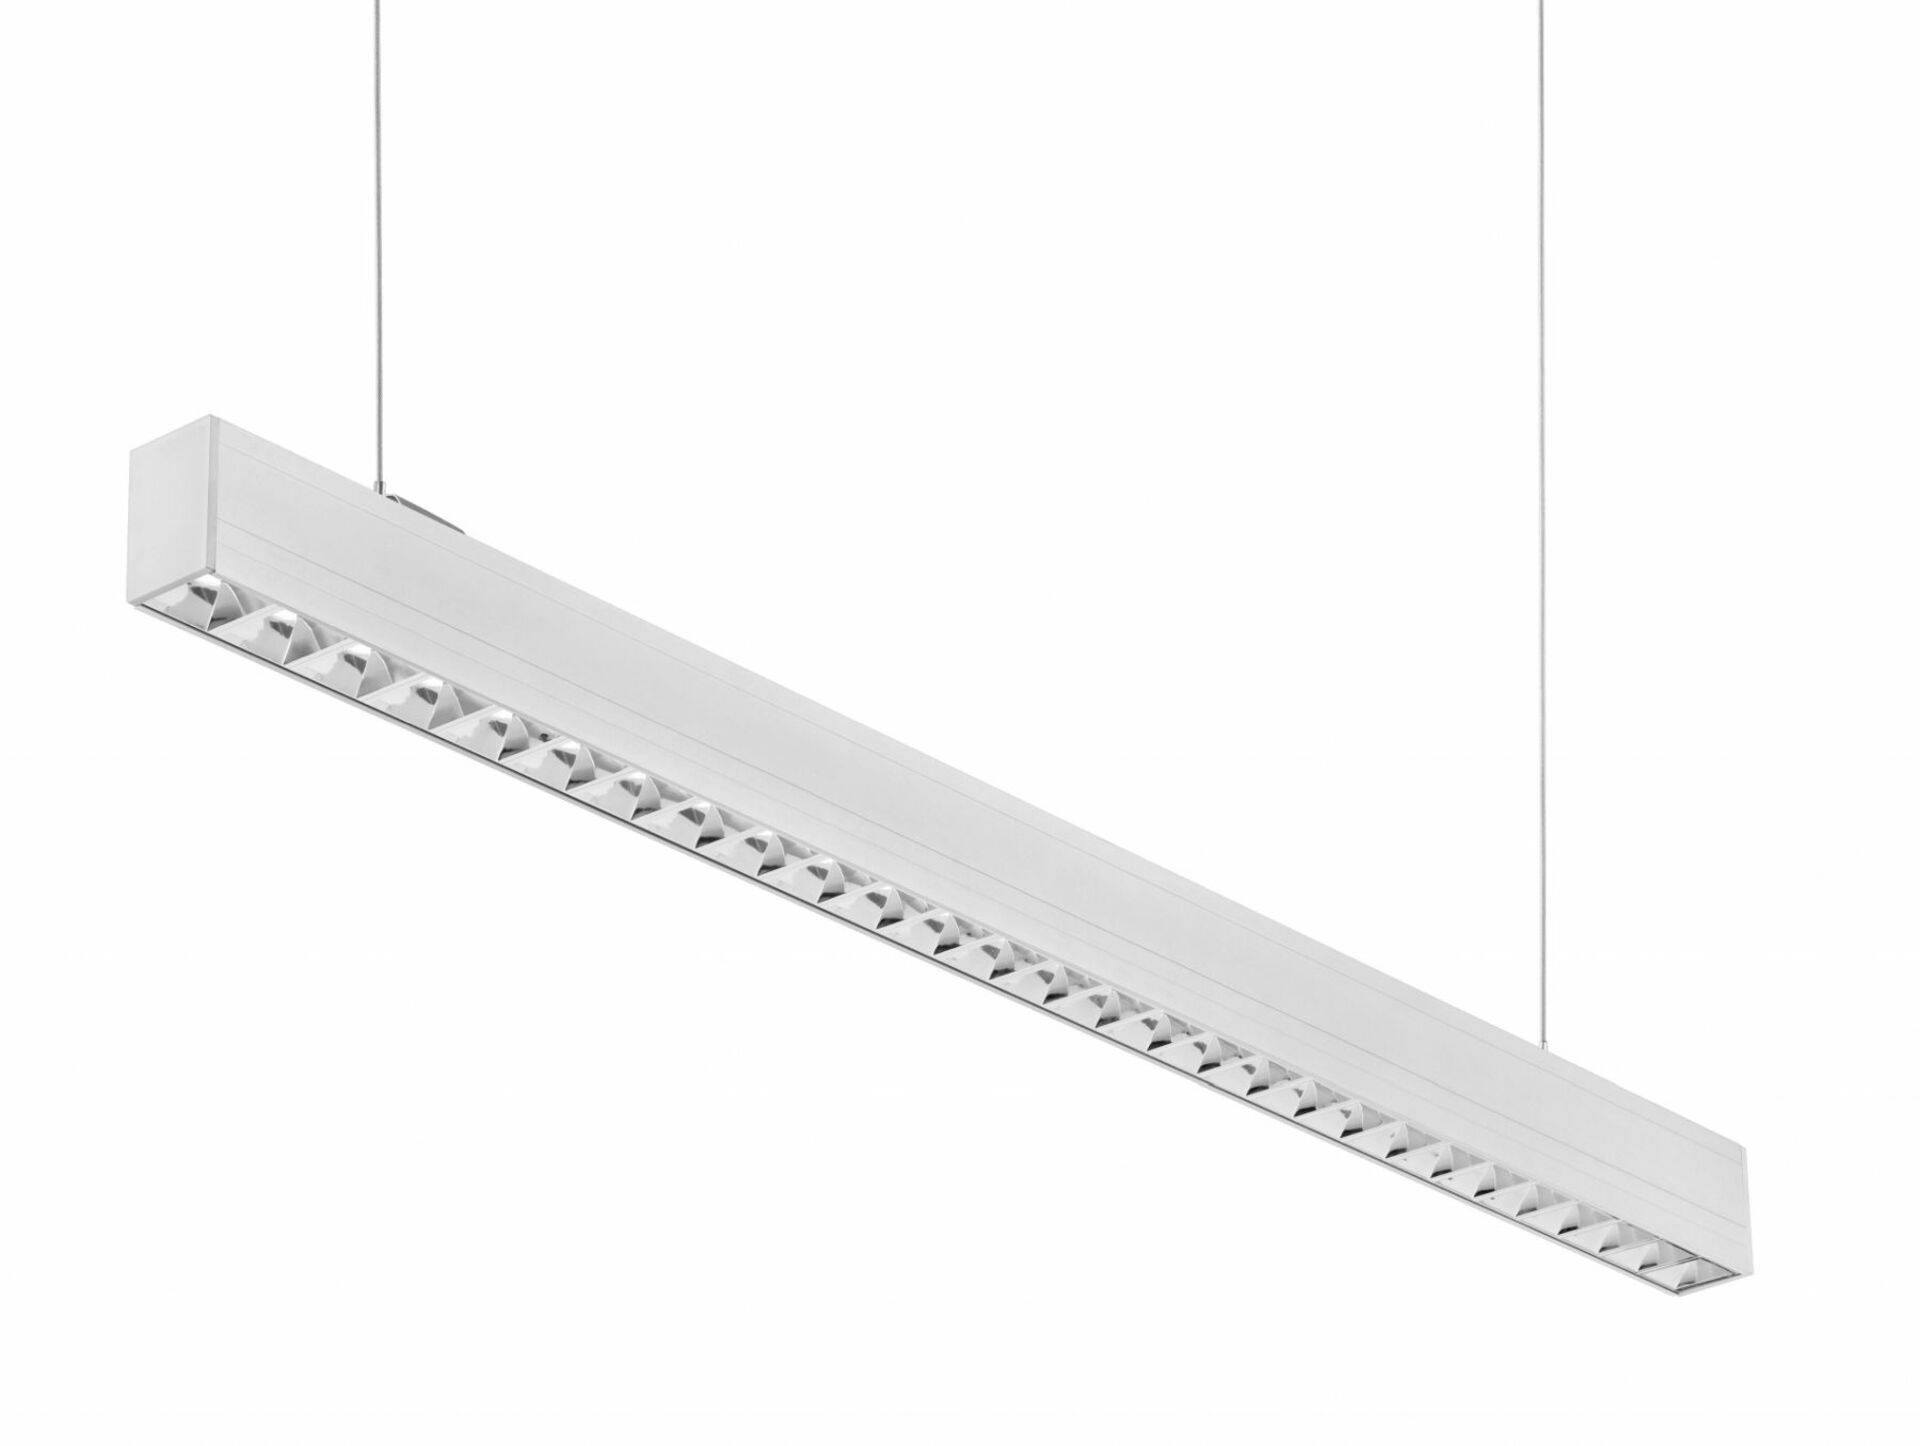 CENTURY LED liniové svítidlo LINKY závěsné Parabolický reflektor 32W, 3200lm,4000K,Ra80, UGR16, 90d, IP20 ,1131x50x75mm, včetně 2ks závěsů 1,5m